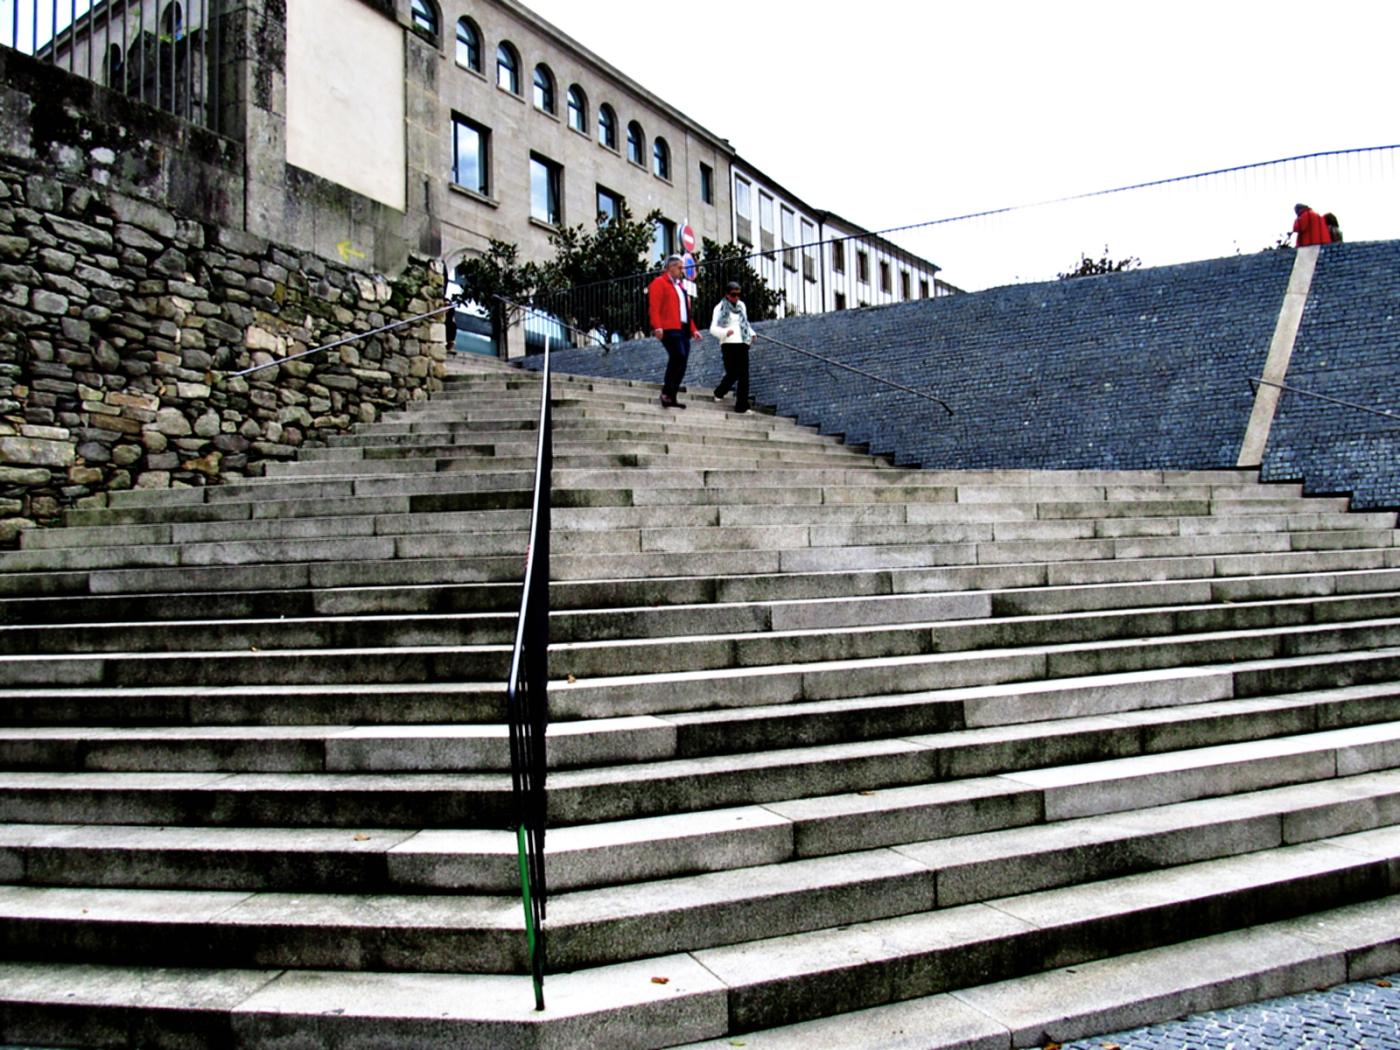 Escalinatas en un espacio público de Santiago de Compostela (Galicia, España) 12 de octubre 2012